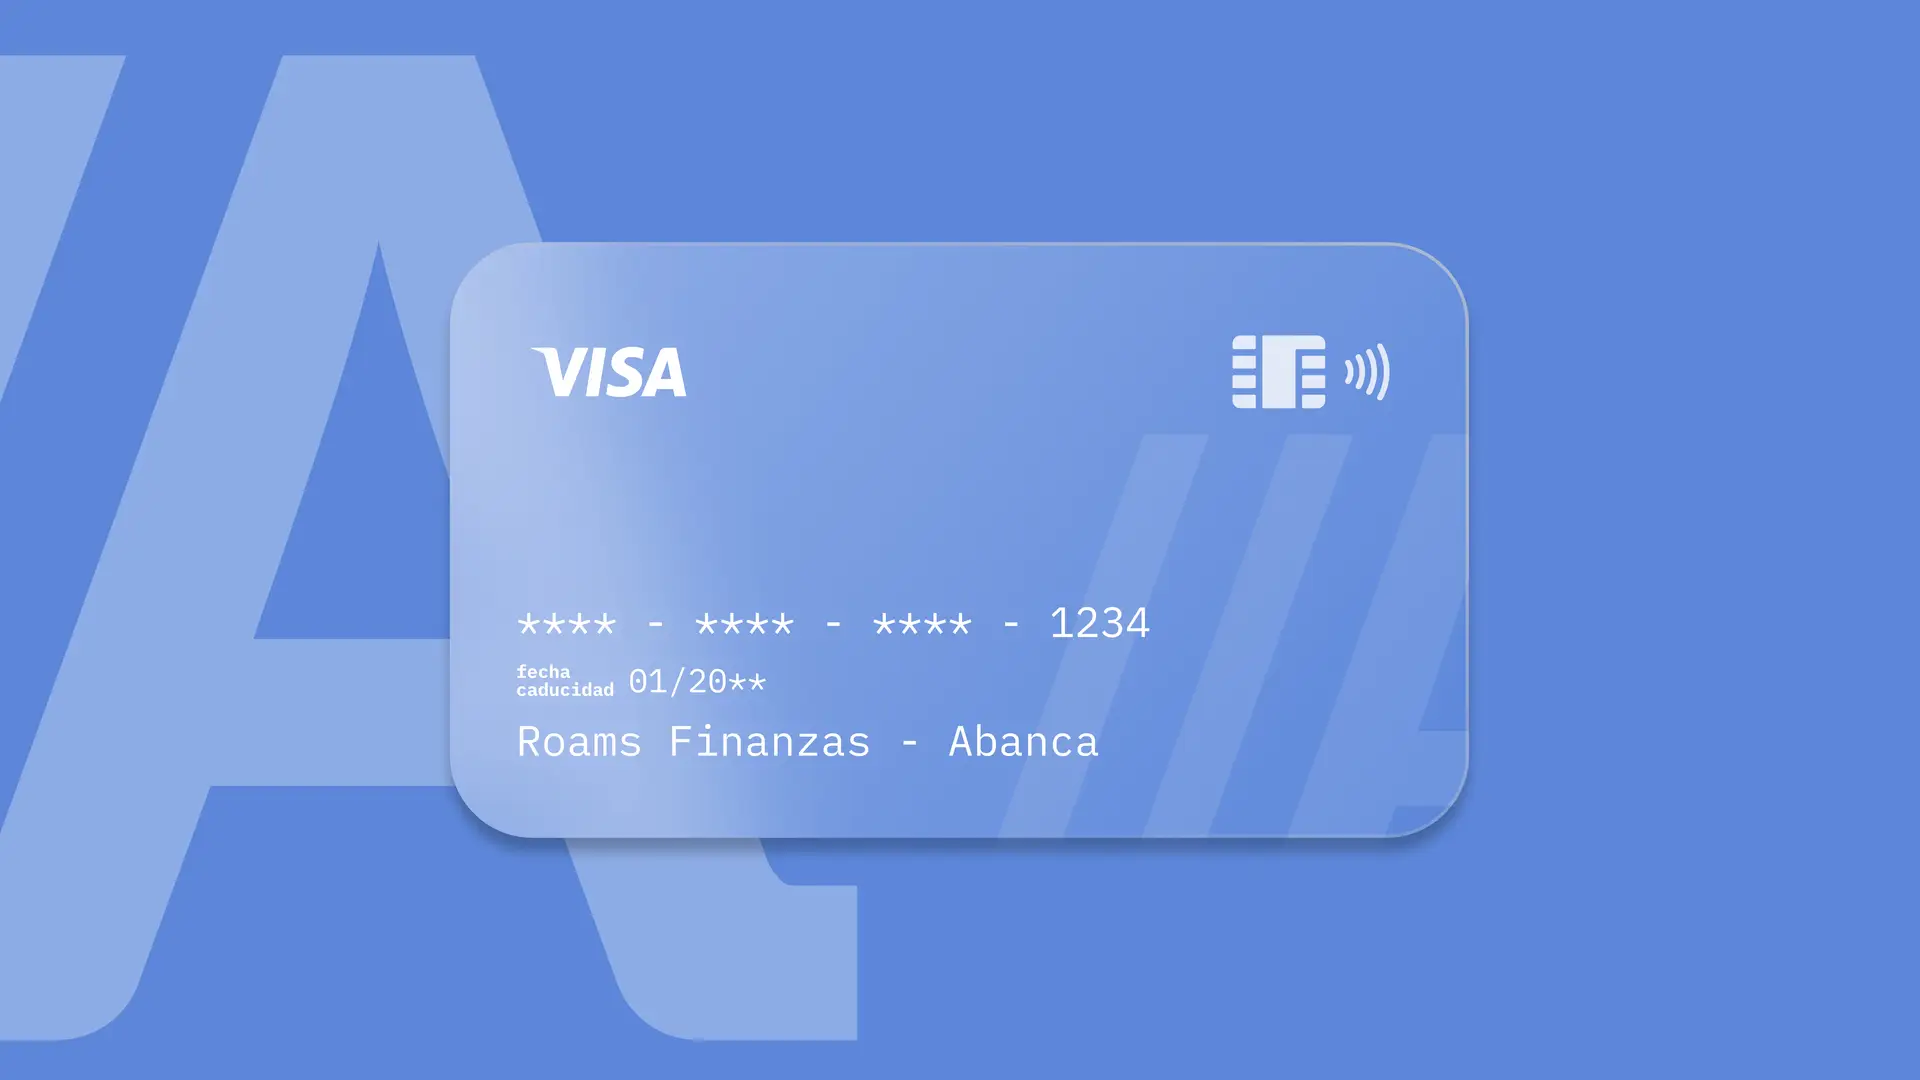 Simulación de una tarjeta de la entidad financiera Abanca creada por Roams.